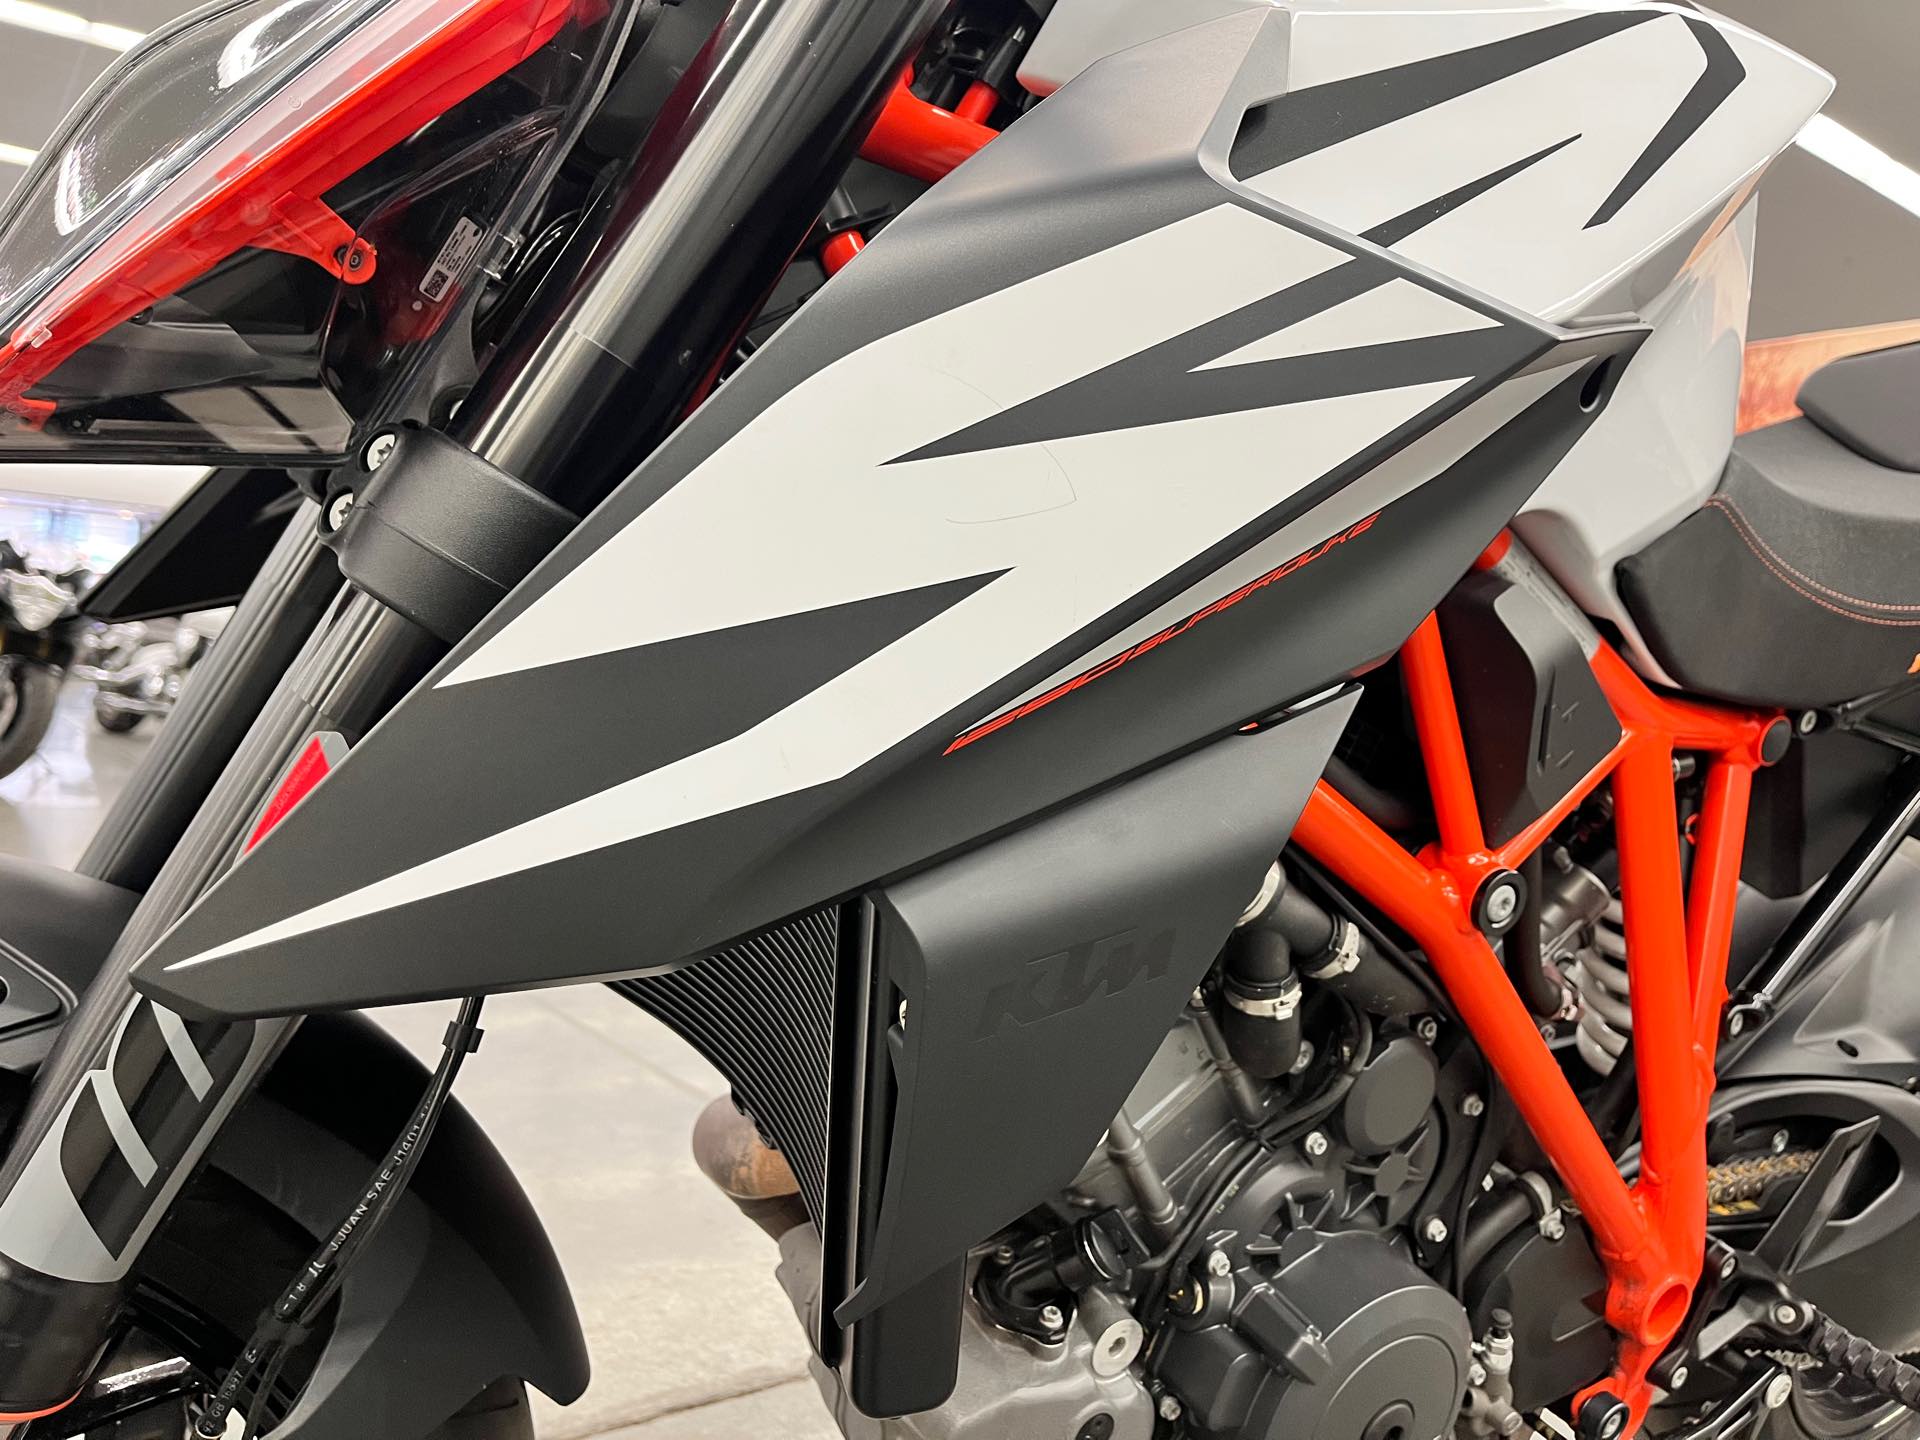 2019 KTM Super Duke 1290 R at Aces Motorcycles - Denver